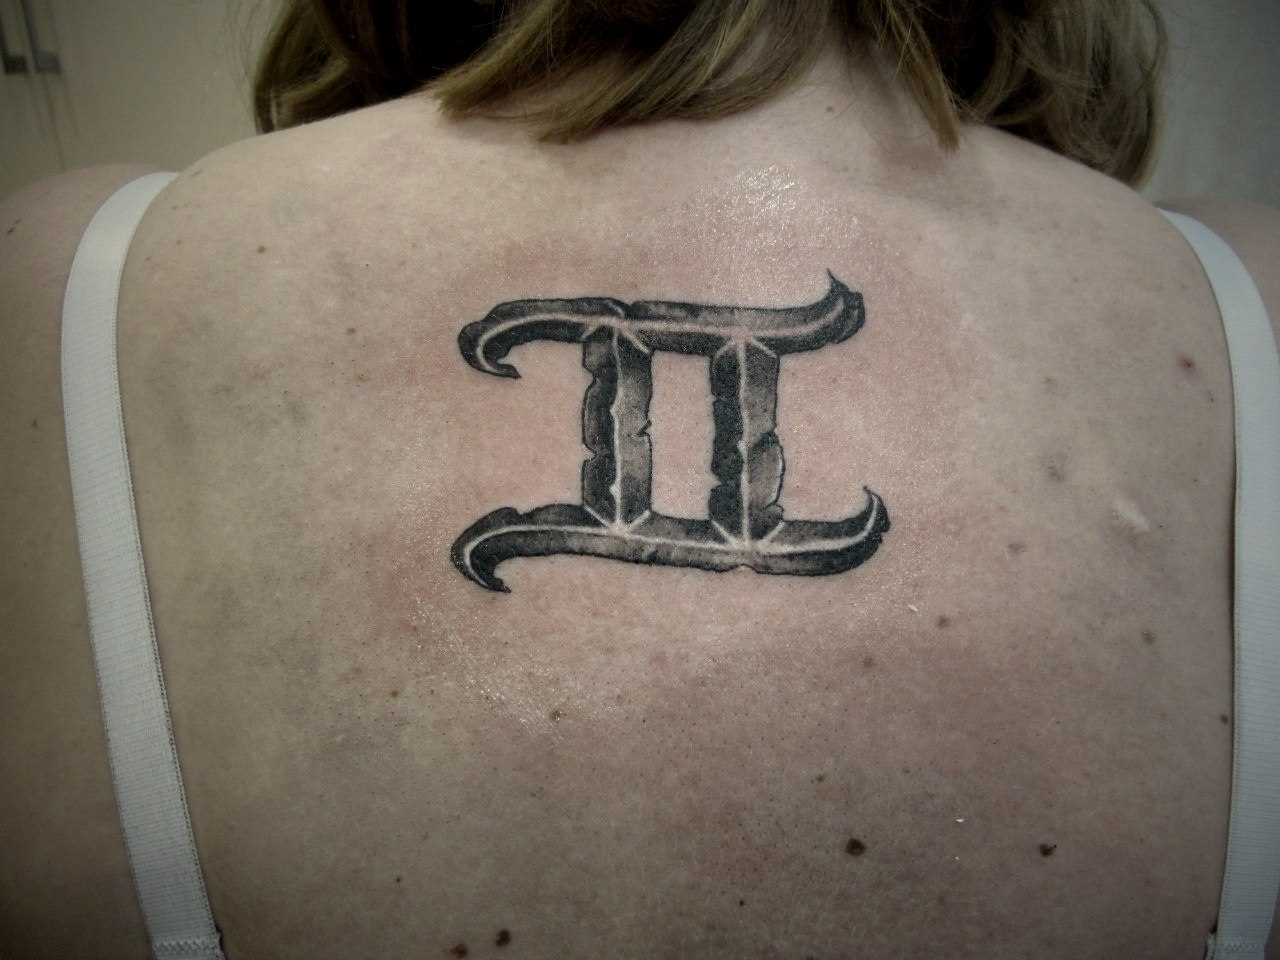 A tatuagem nas costas de uma menina - signo de Gêmeos